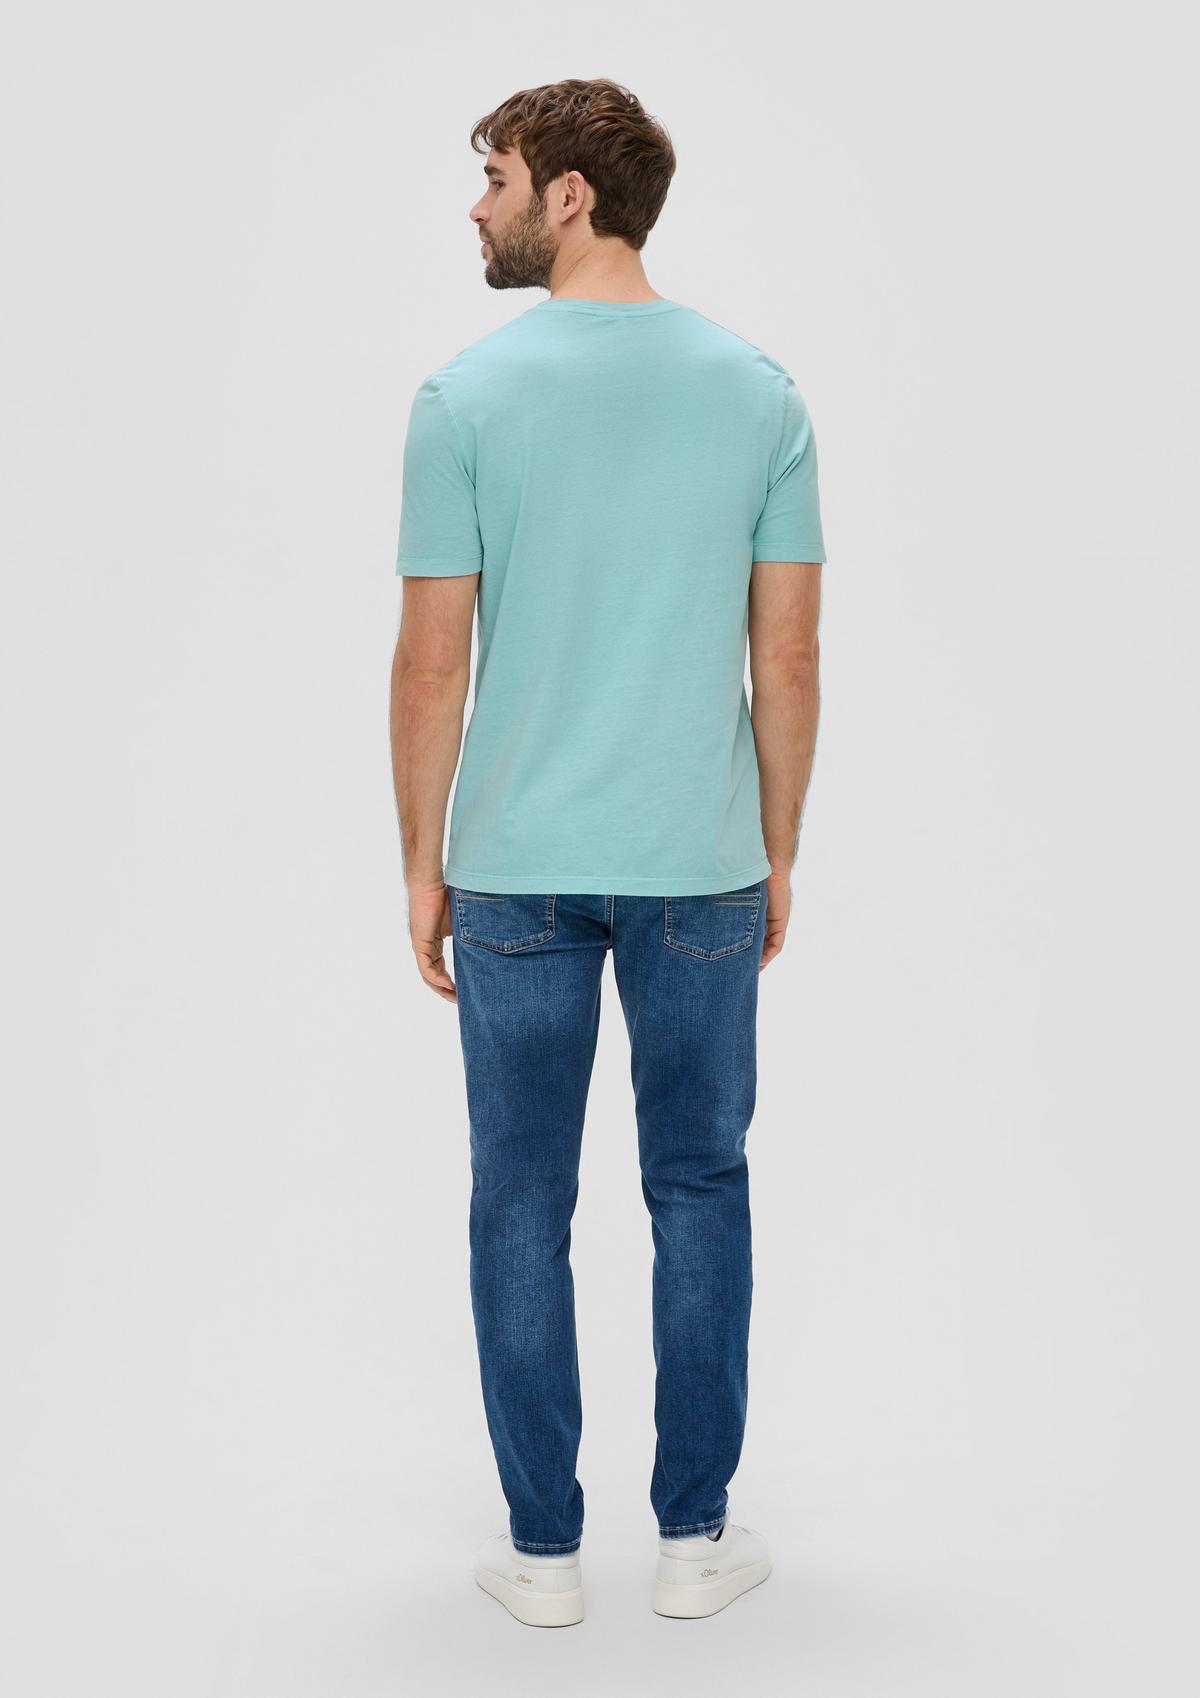 s.Oliver T-Shirt mit Garment Dye und Henley-Ausschnitt